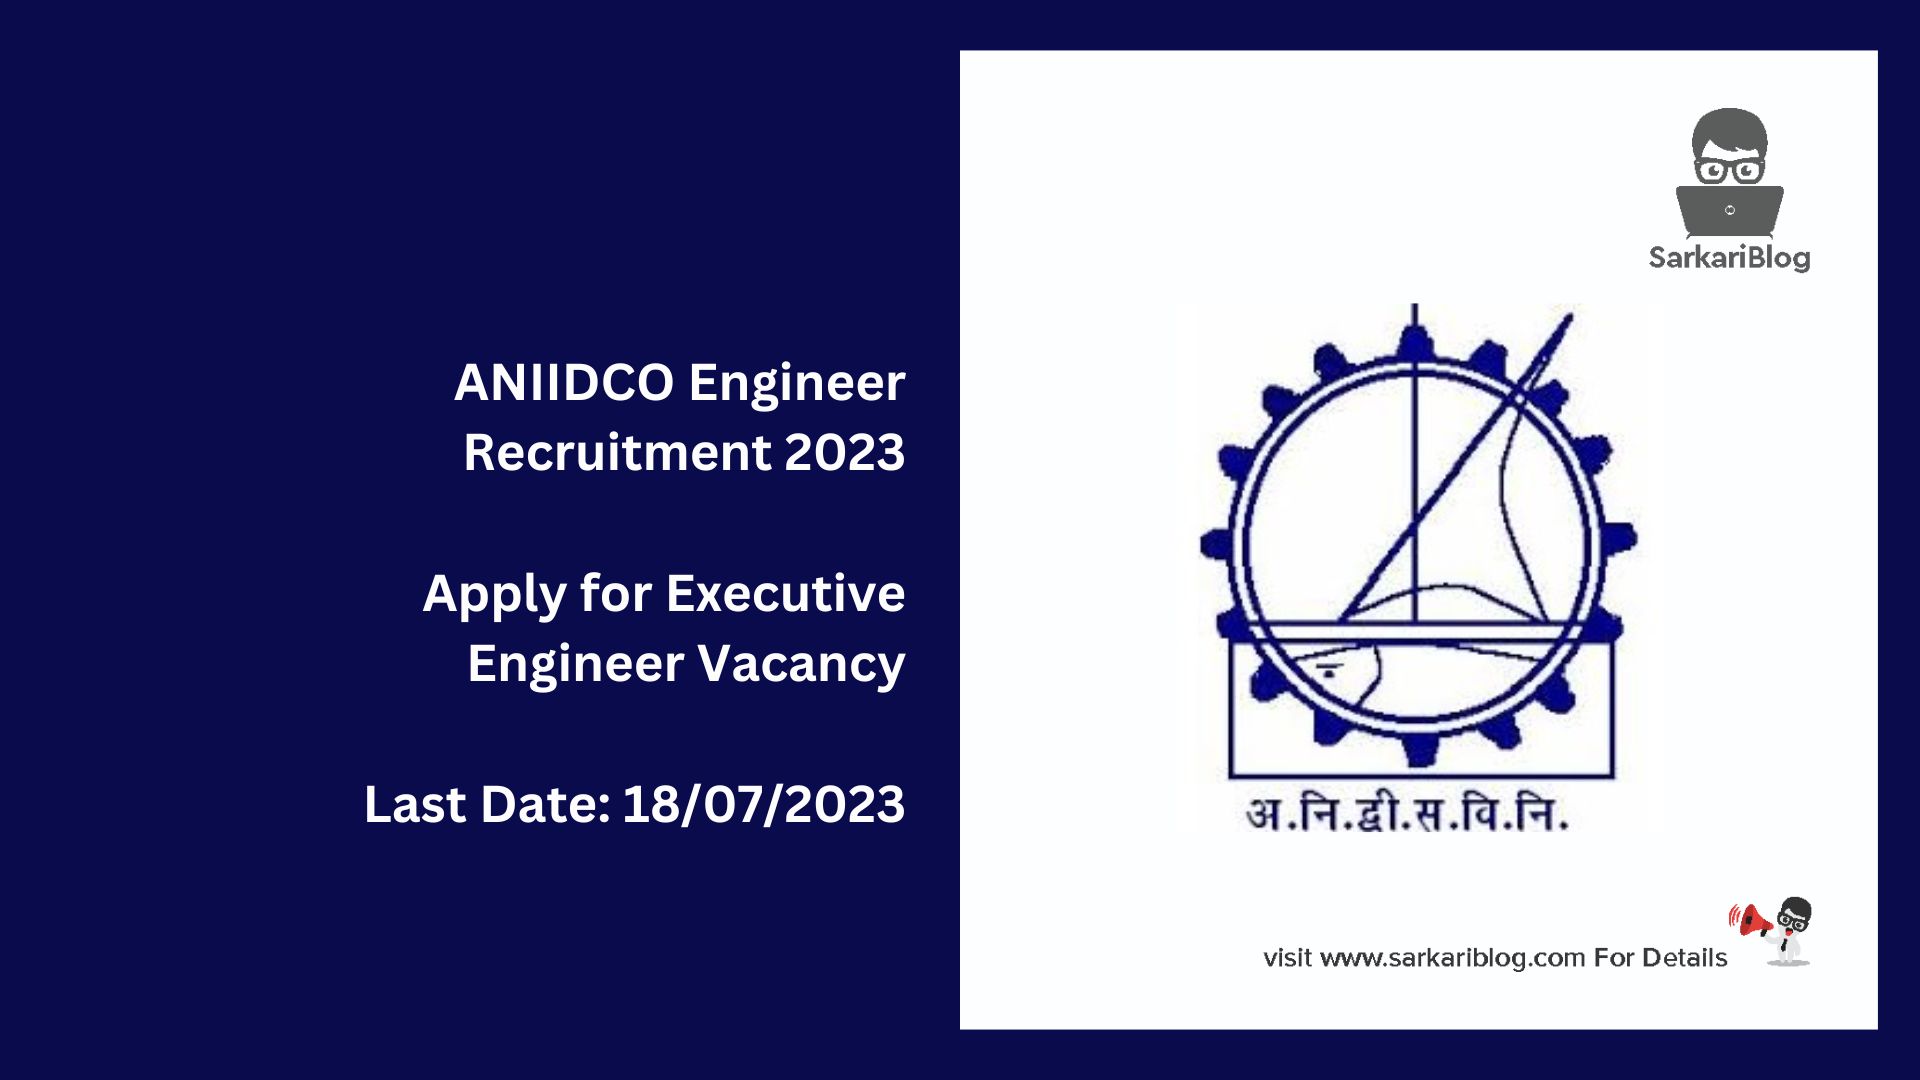 ANIIDCO Engineer Recruitment 2023